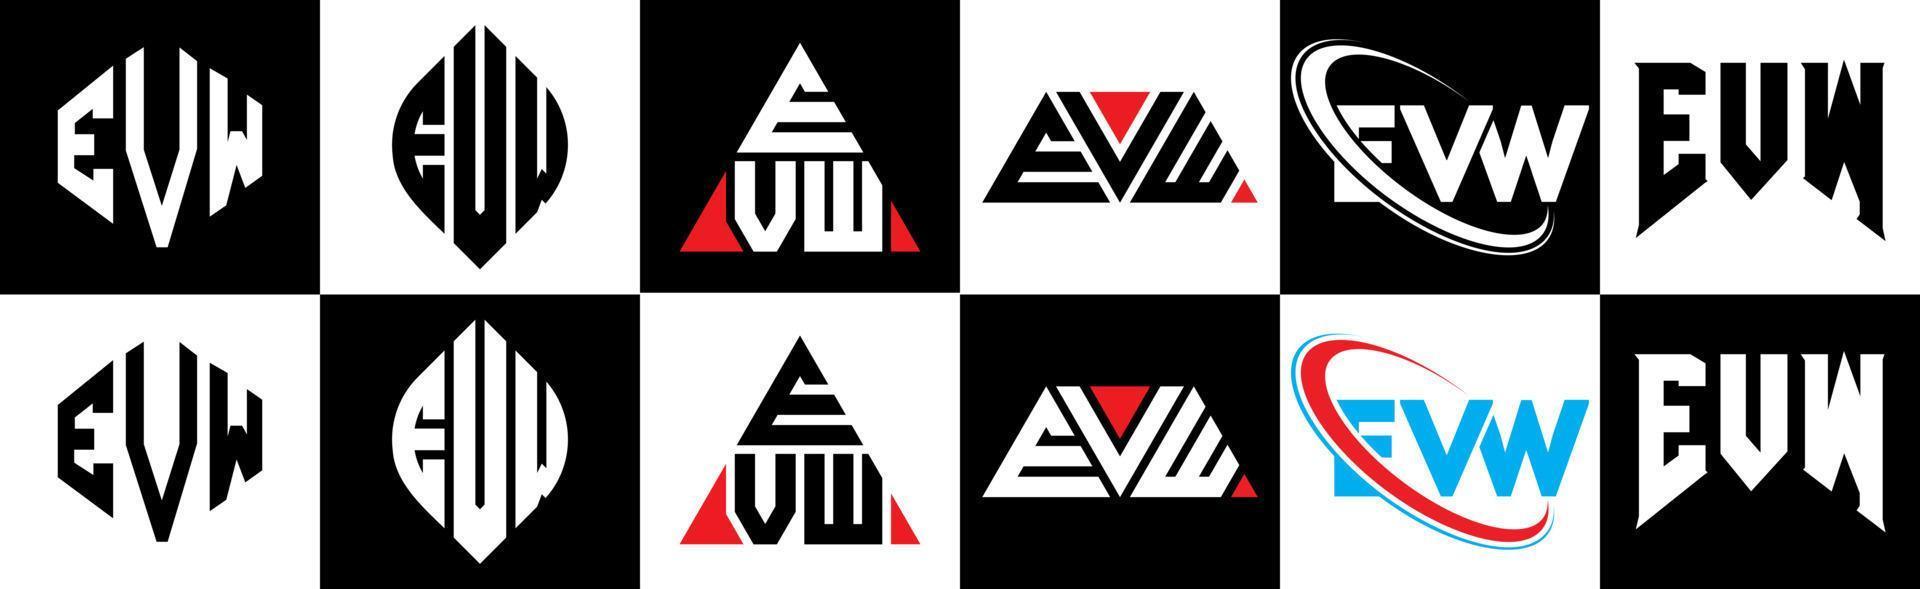 création de logo de lettre evw en six styles. polygone evw, cercle, triangle, hexagone, style plat et simple avec logo de lettre de variation de couleur noir et blanc dans un plan de travail. logo minimaliste et classique evw vecteur